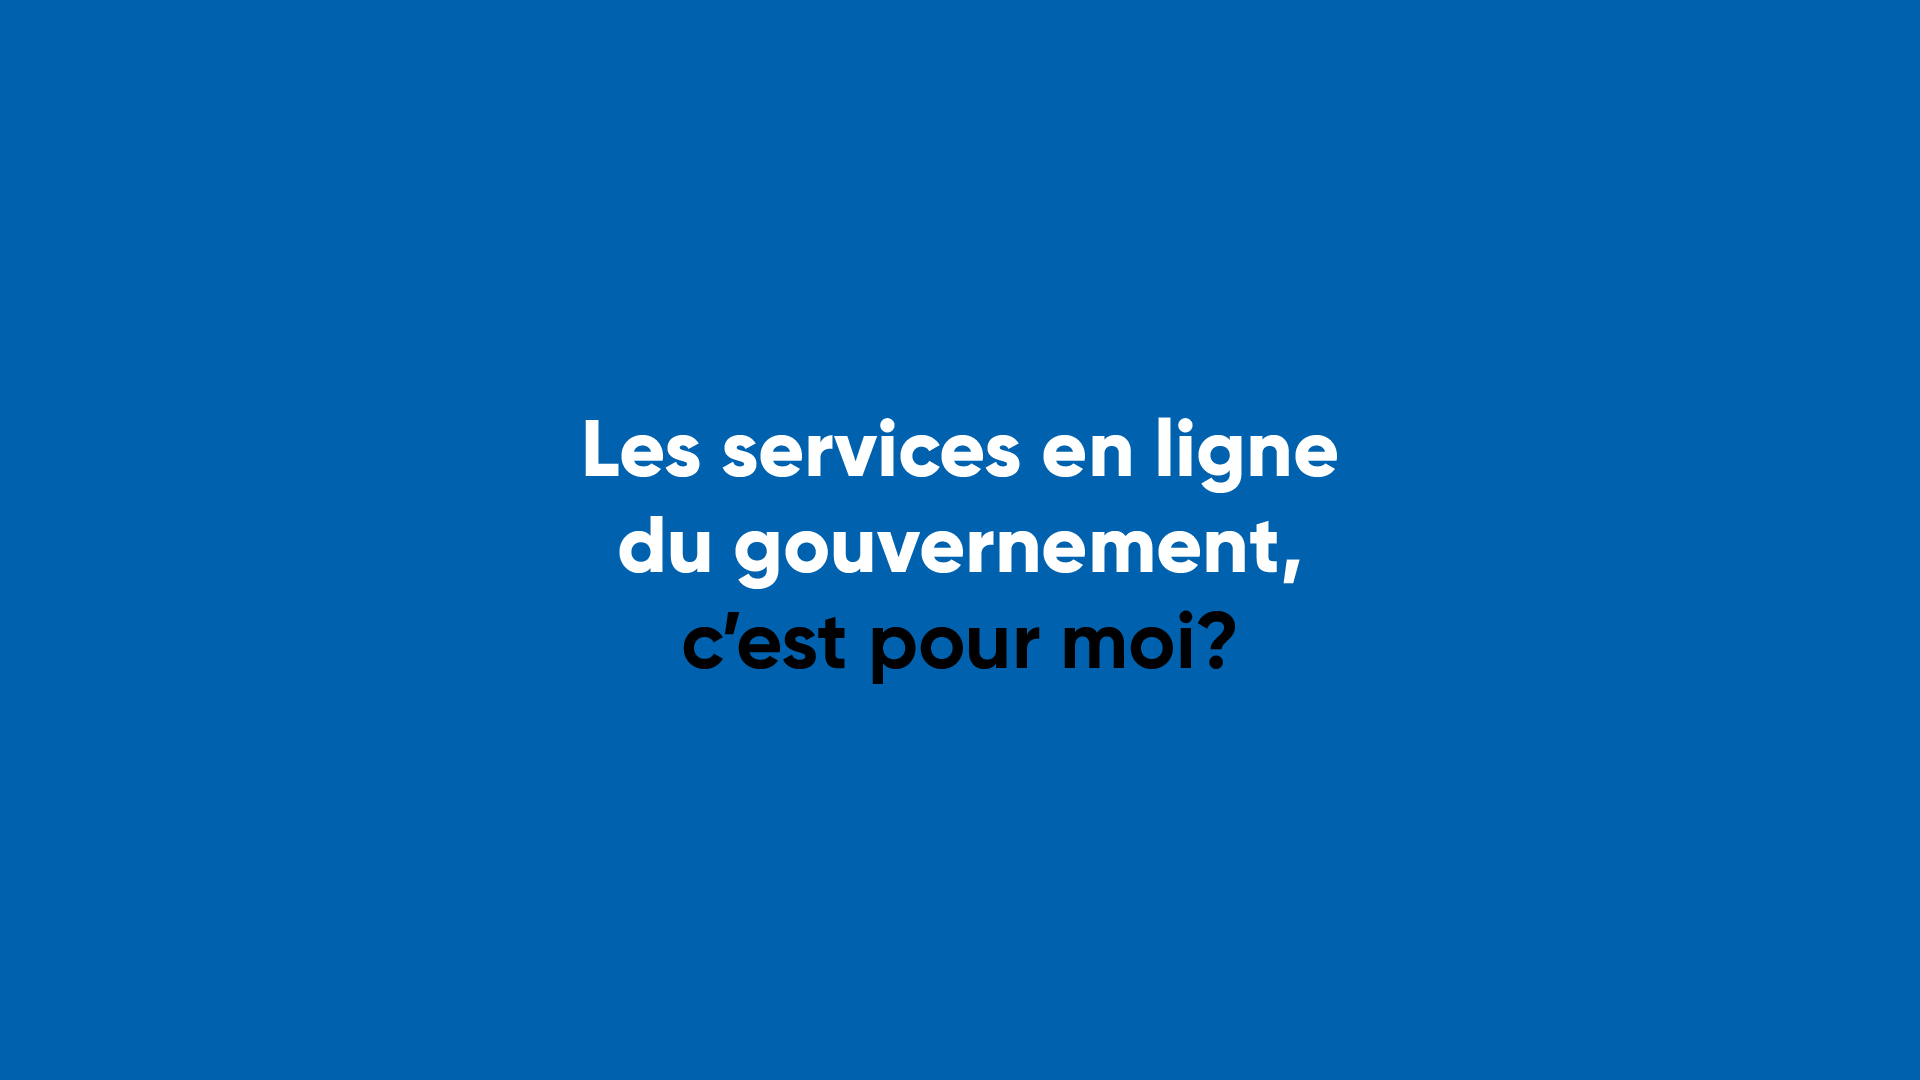 Les services en ligne du gouvernement, c'est pour moi?